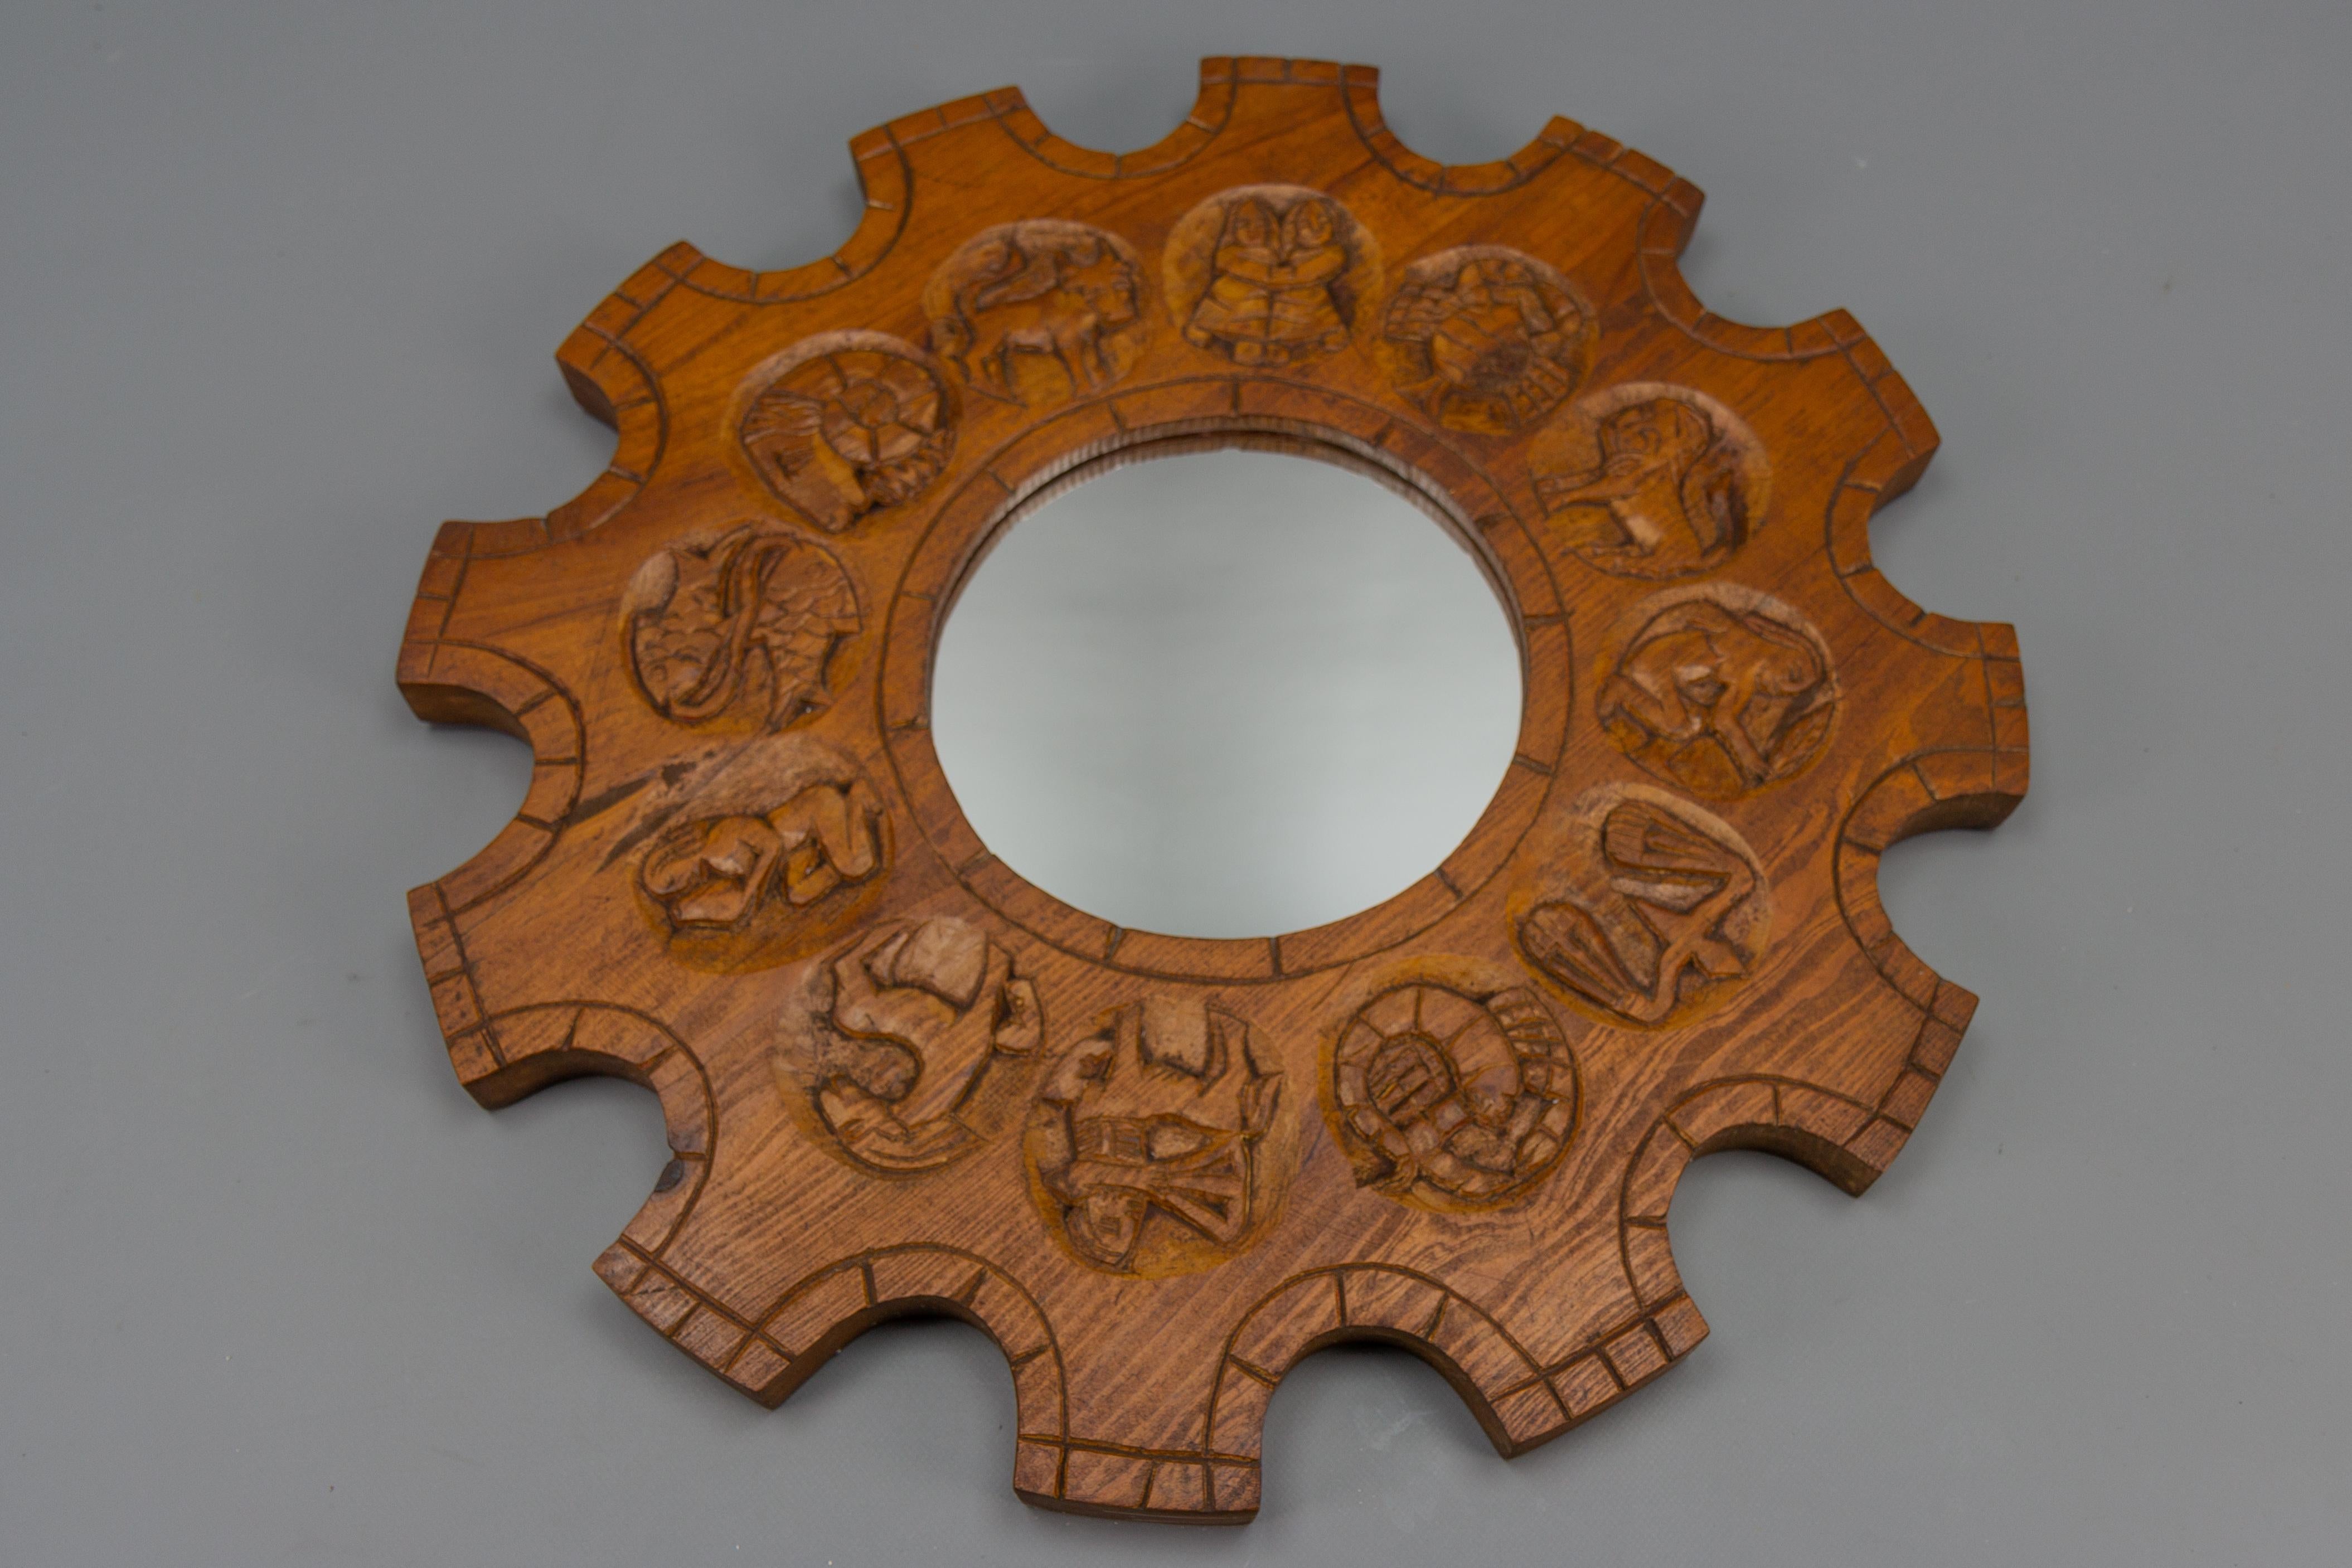 Miroir mural en bois de pin sculpté en forme de soleil avec des signes du Zodiac, Allemagne, vers les années 1970.
Ce miroir mural rond vintage massif présente un cadre en bois de pin avec des signes du Zodiac sculptés à la main.
Dimensions :